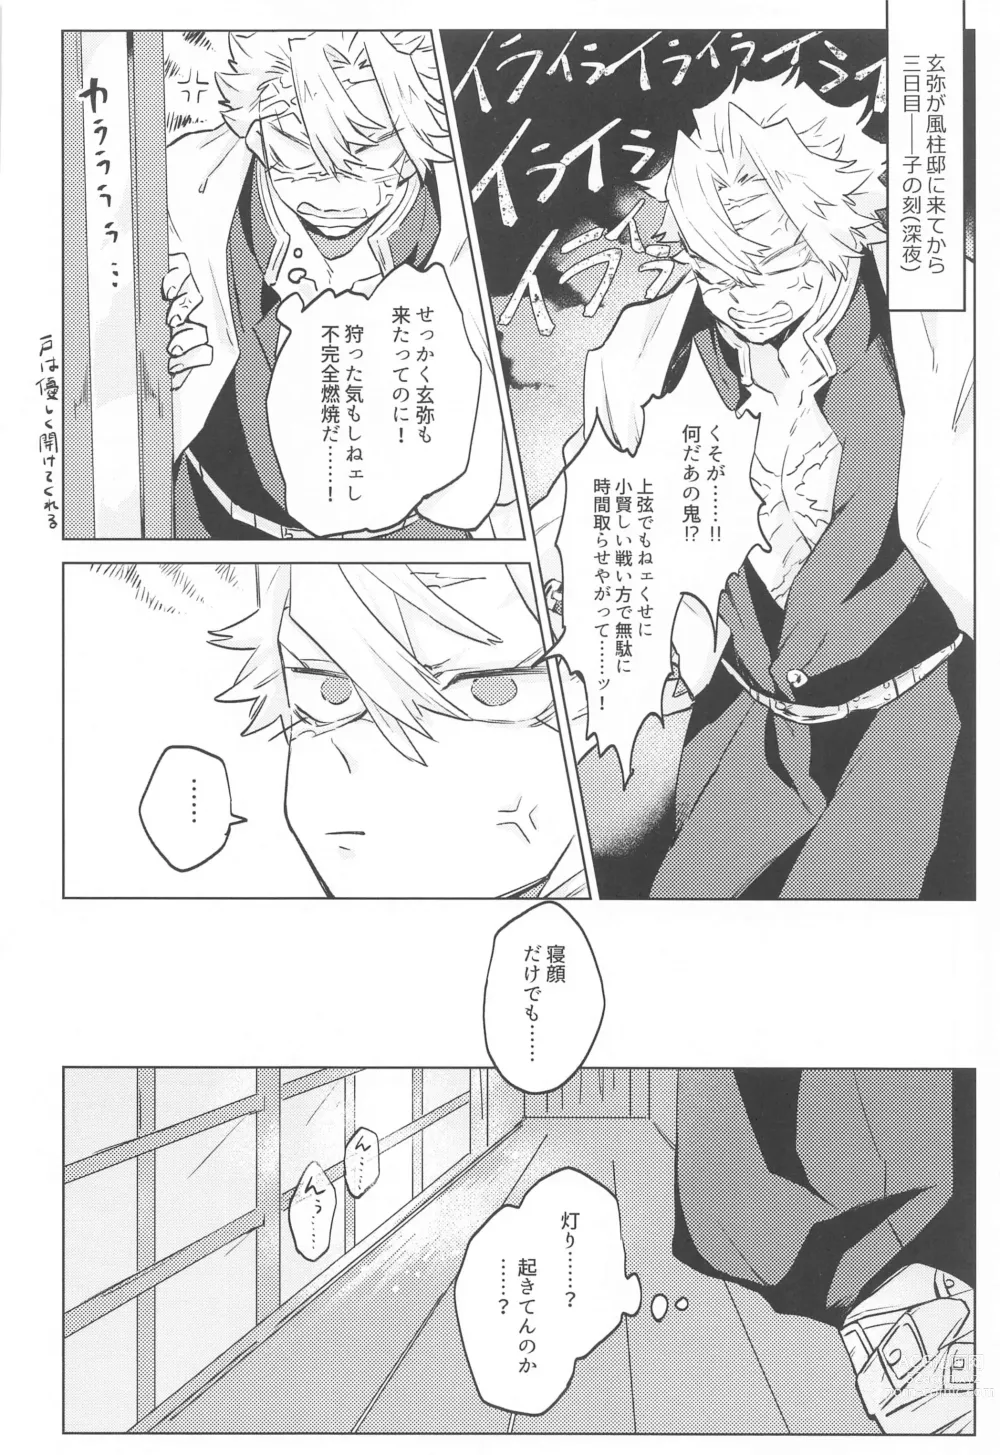 Page 6 of doujinshi Shion no Kusari